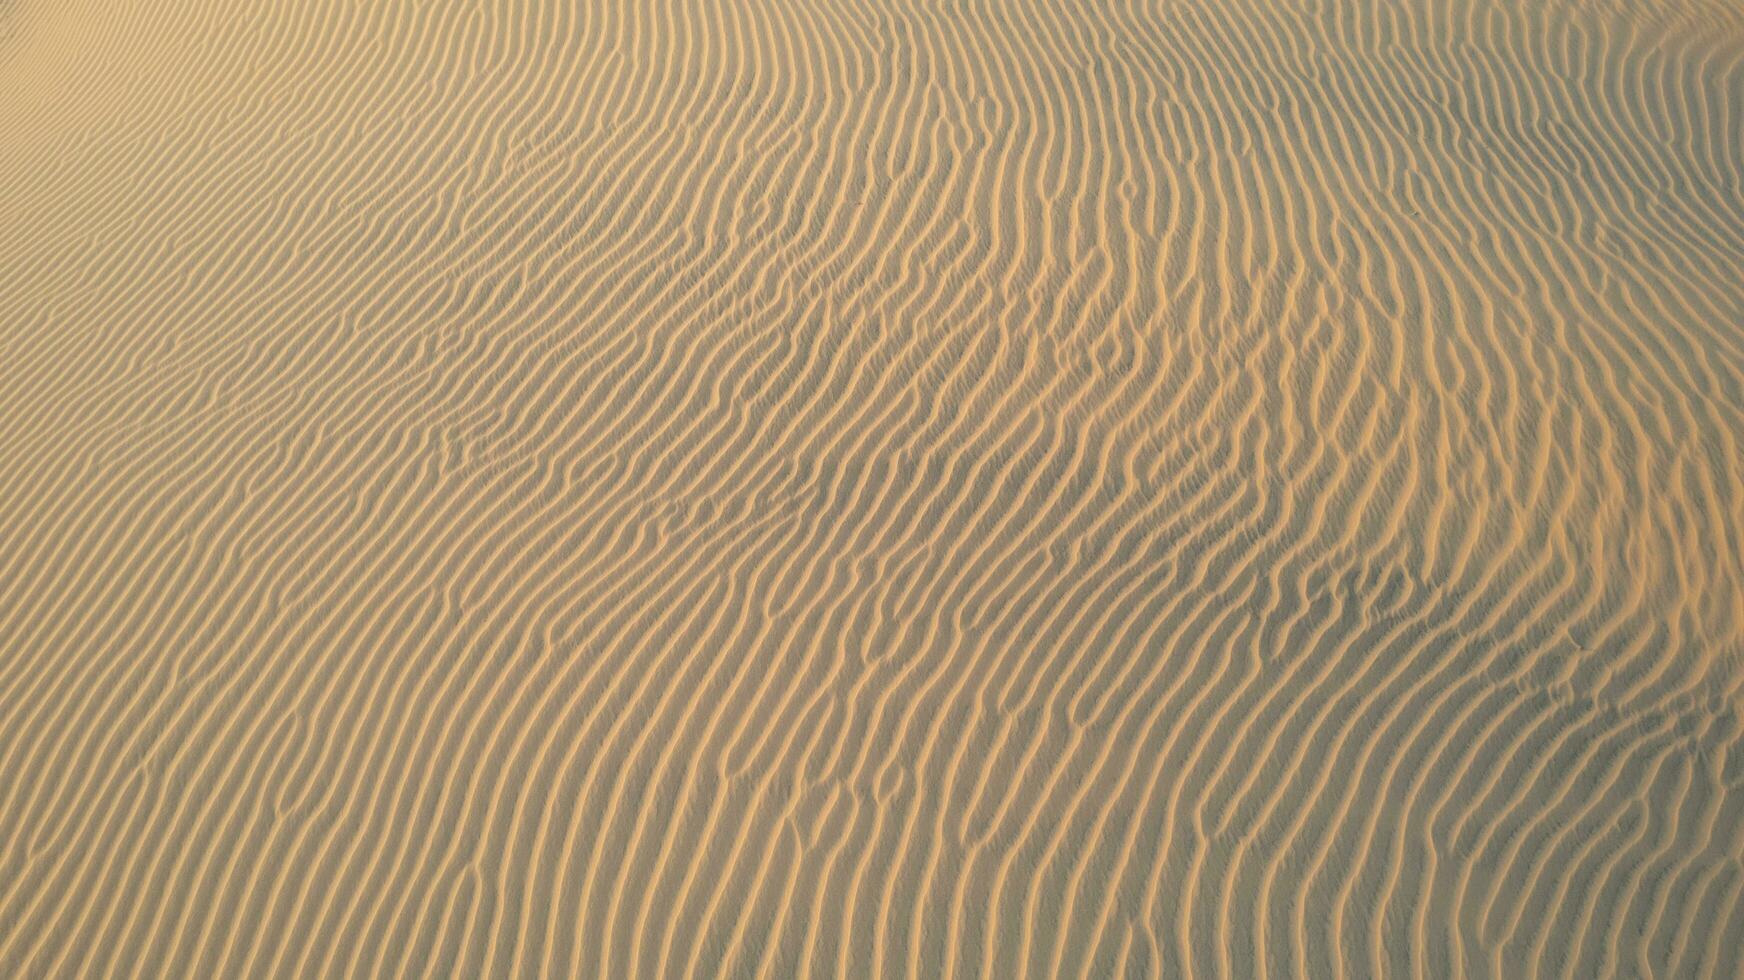 Vietnam red sand dunes golden hour photo